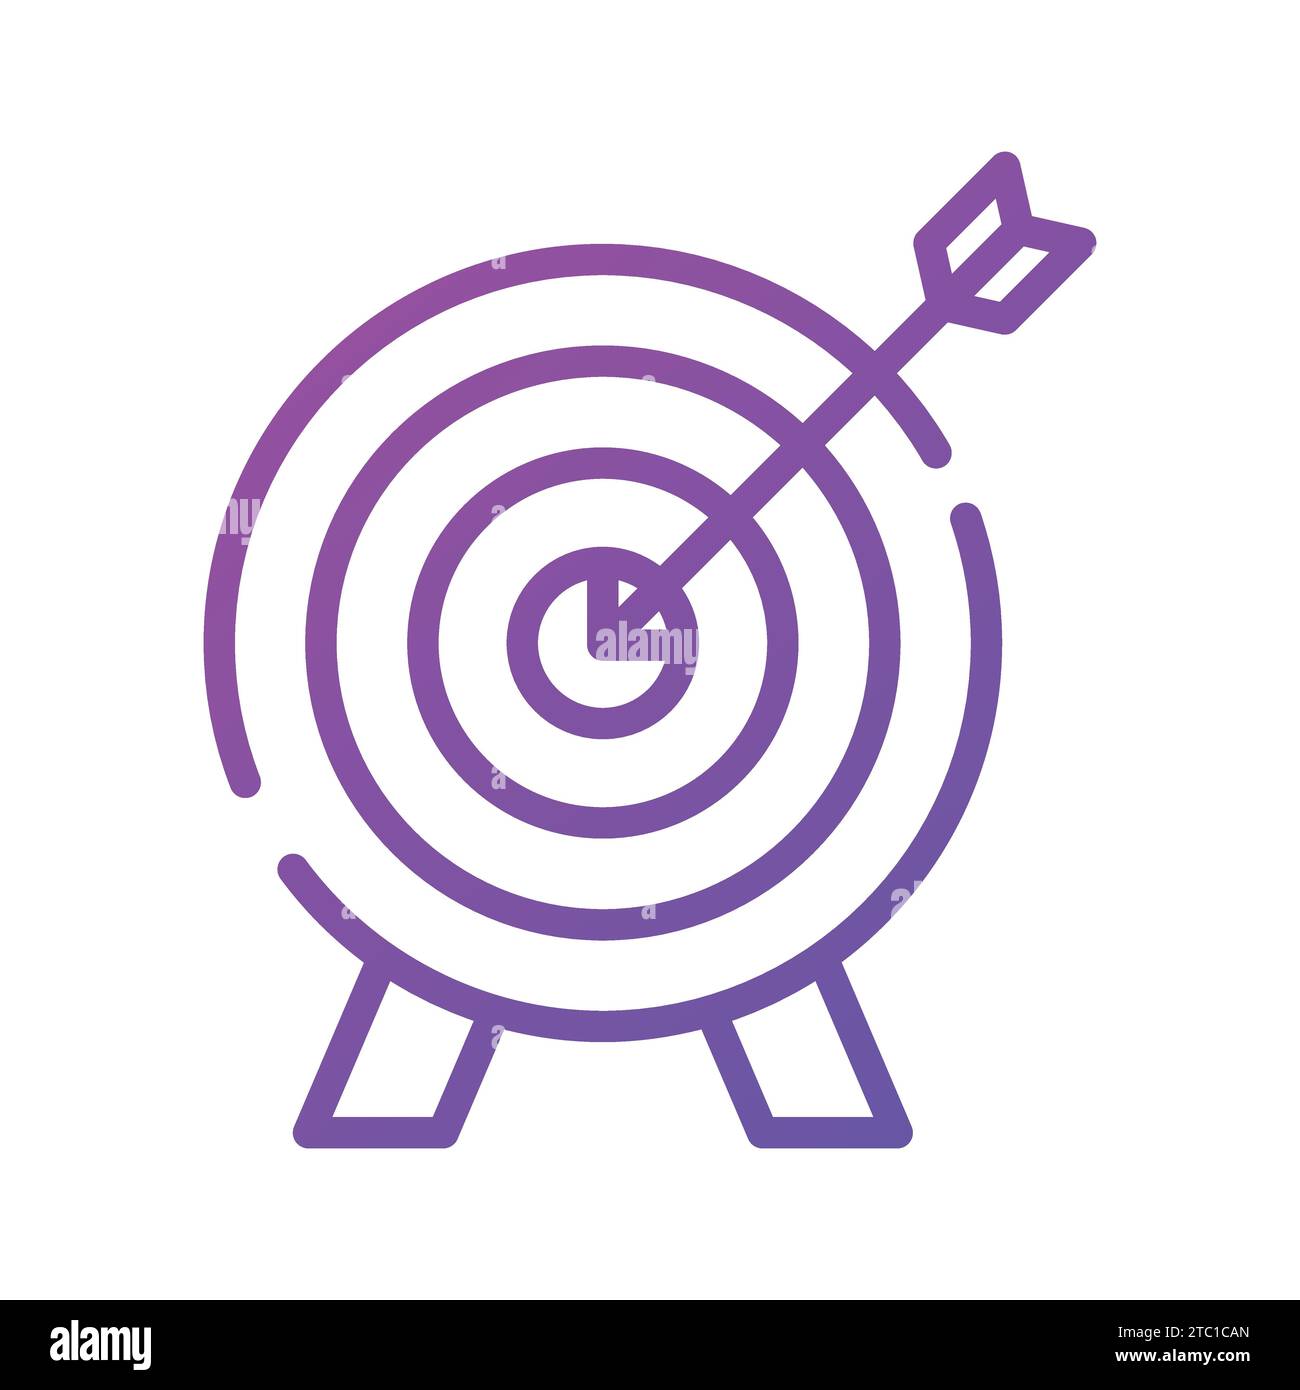 Un'icona di freccette che denota il concetto di obiettivo aziendale, la progettazione di vettori di destinazione aziendale. Illustrazione Vettoriale